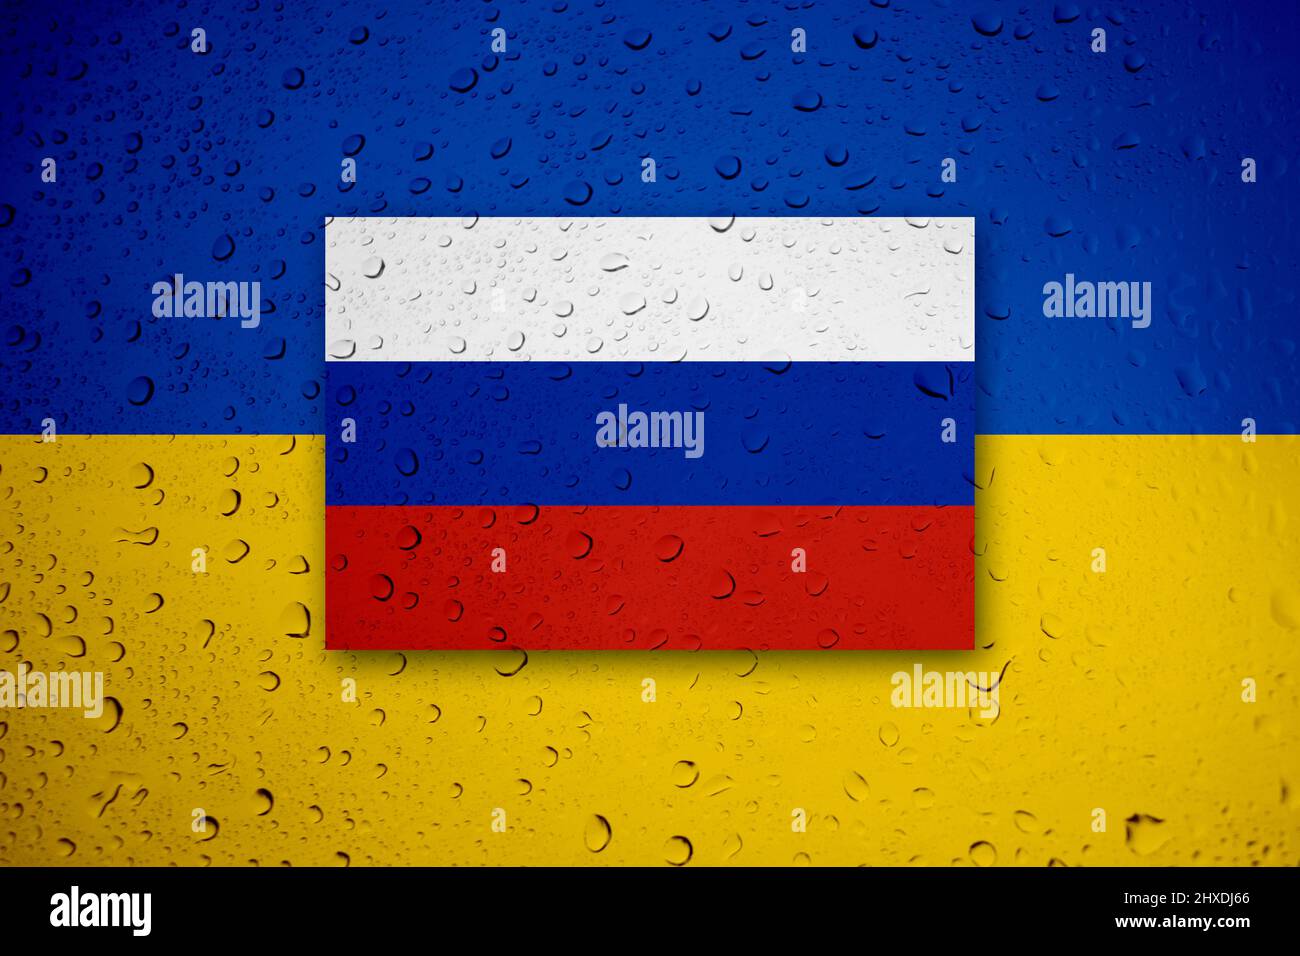 Russland gegen die Ukraine – abstraktes Konzept für den politischen Konflikt mit der ukrainischen Flagge. Betet für die Freiheit, den Frieden und das Ende des Krieges in der Ukraine. Stockfoto